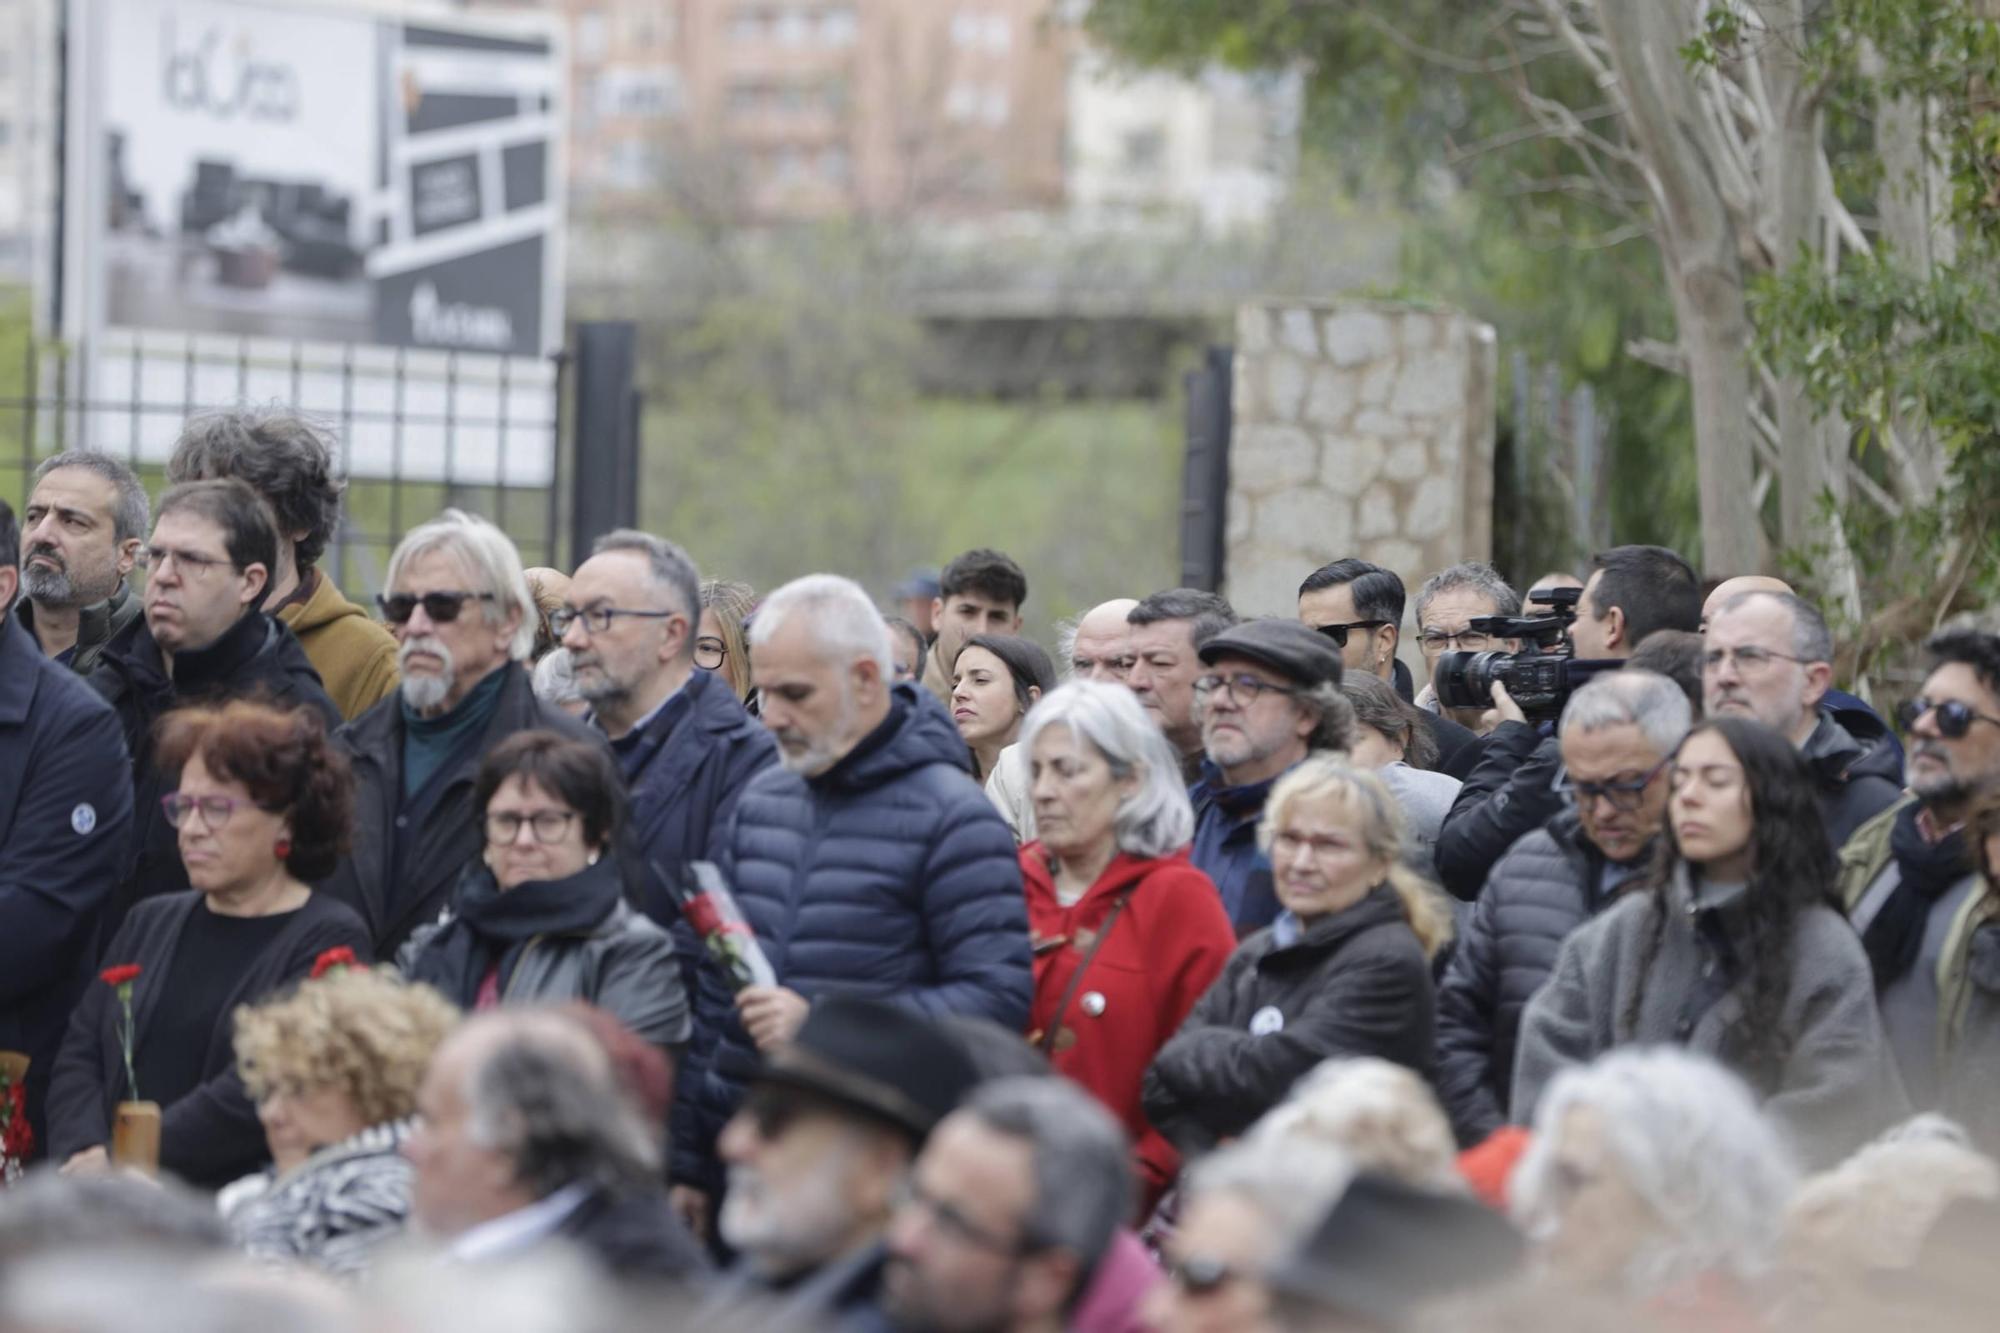 Las críticas al Ayuntamiento de Palma y a la extrema derecha centran el homenaje a los represaliados del franquismo: "Quieren esconder la memoria democrática"